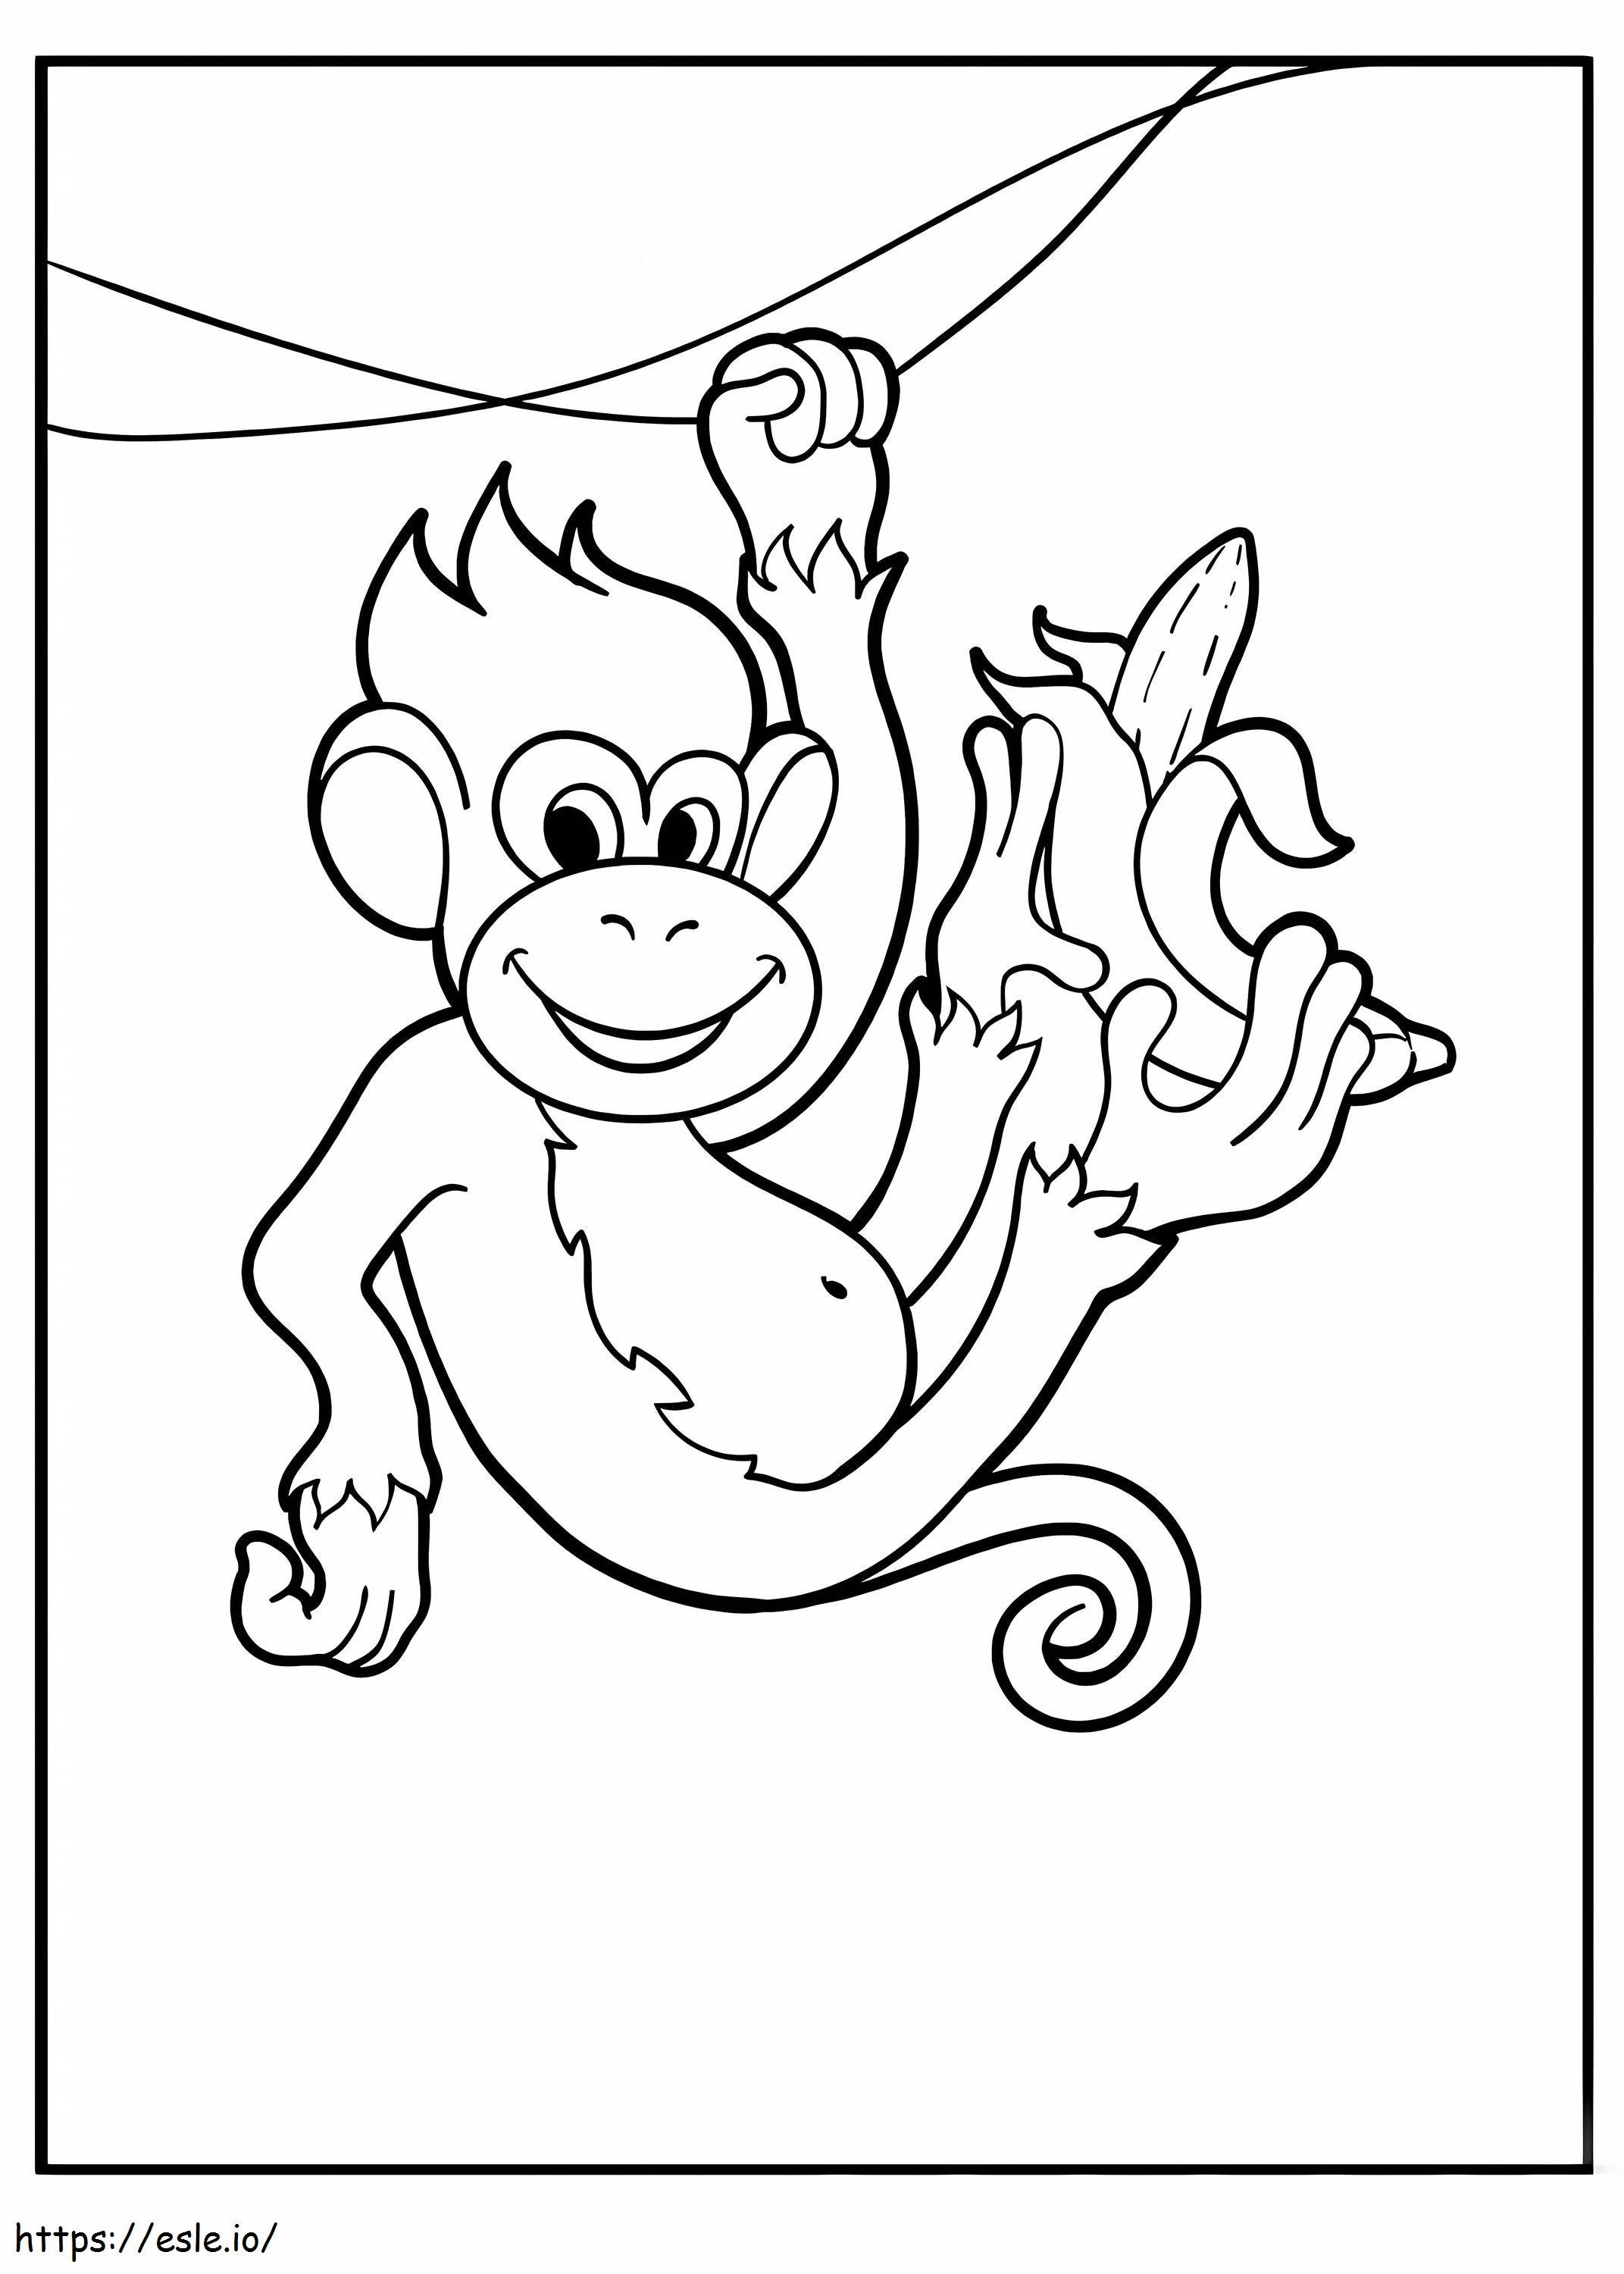 Małpa wspinająca się na gałąź z bananem kolorowanka